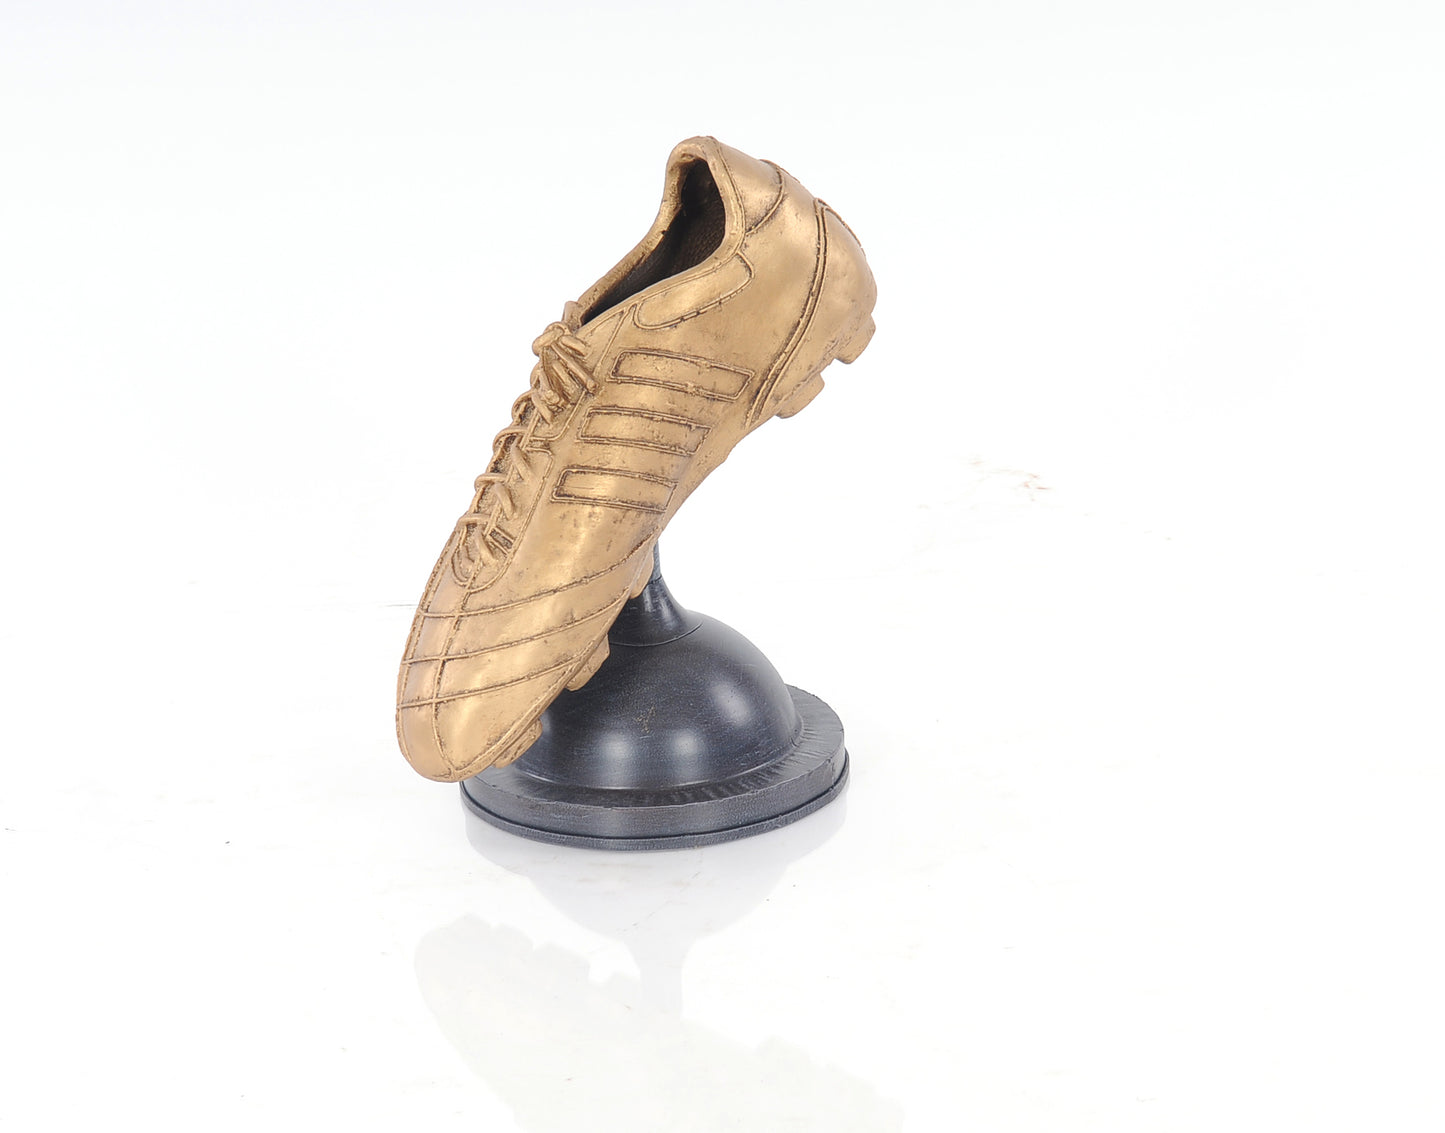 Golden Boot Award By Homeroots | Sculptures | Modishstore - 2